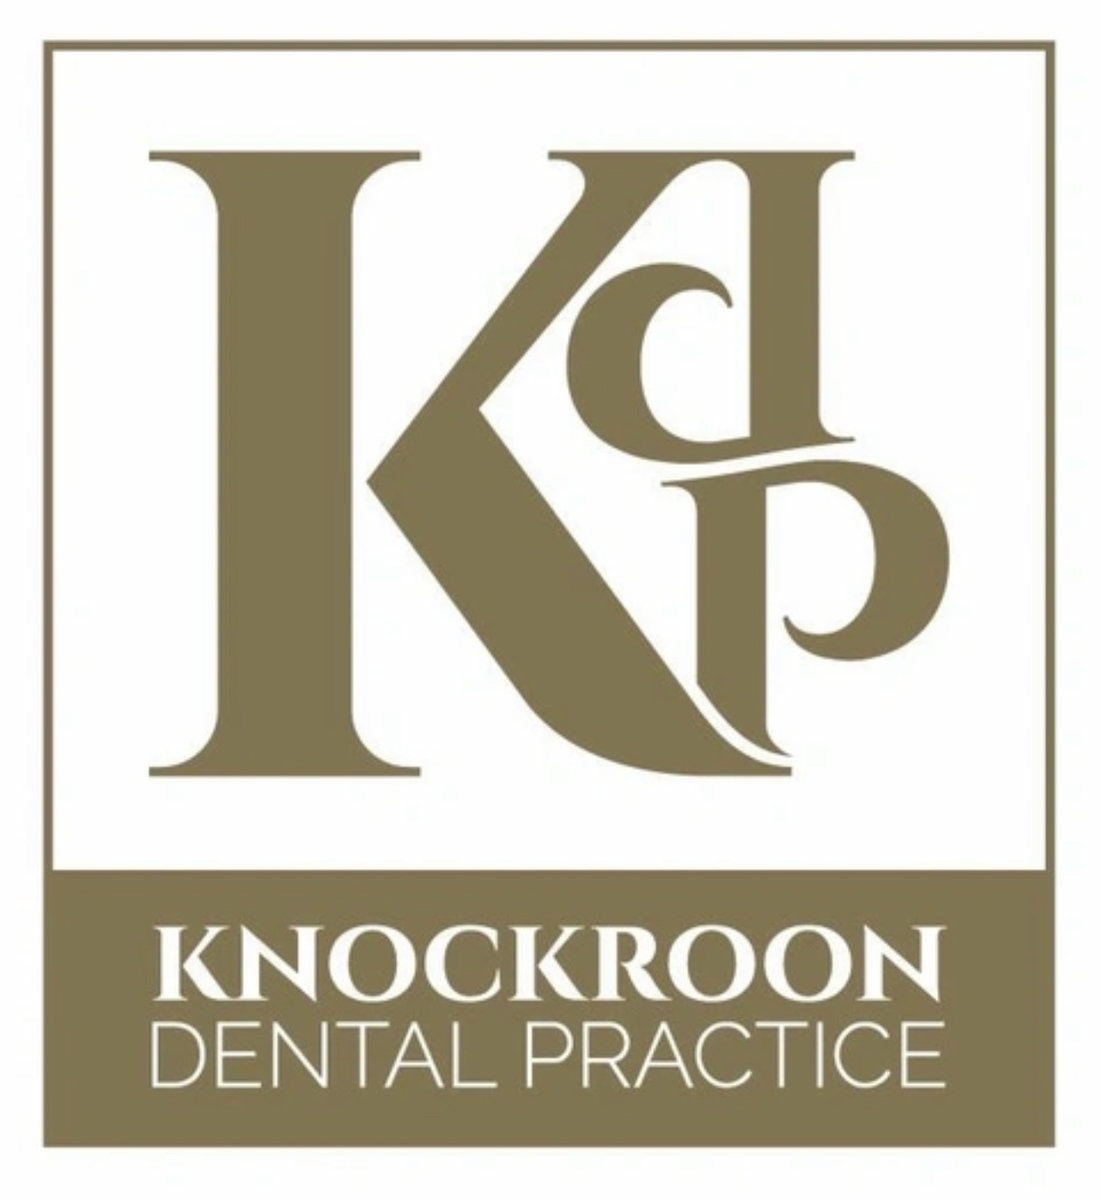 Knockroon Dental Practise logo